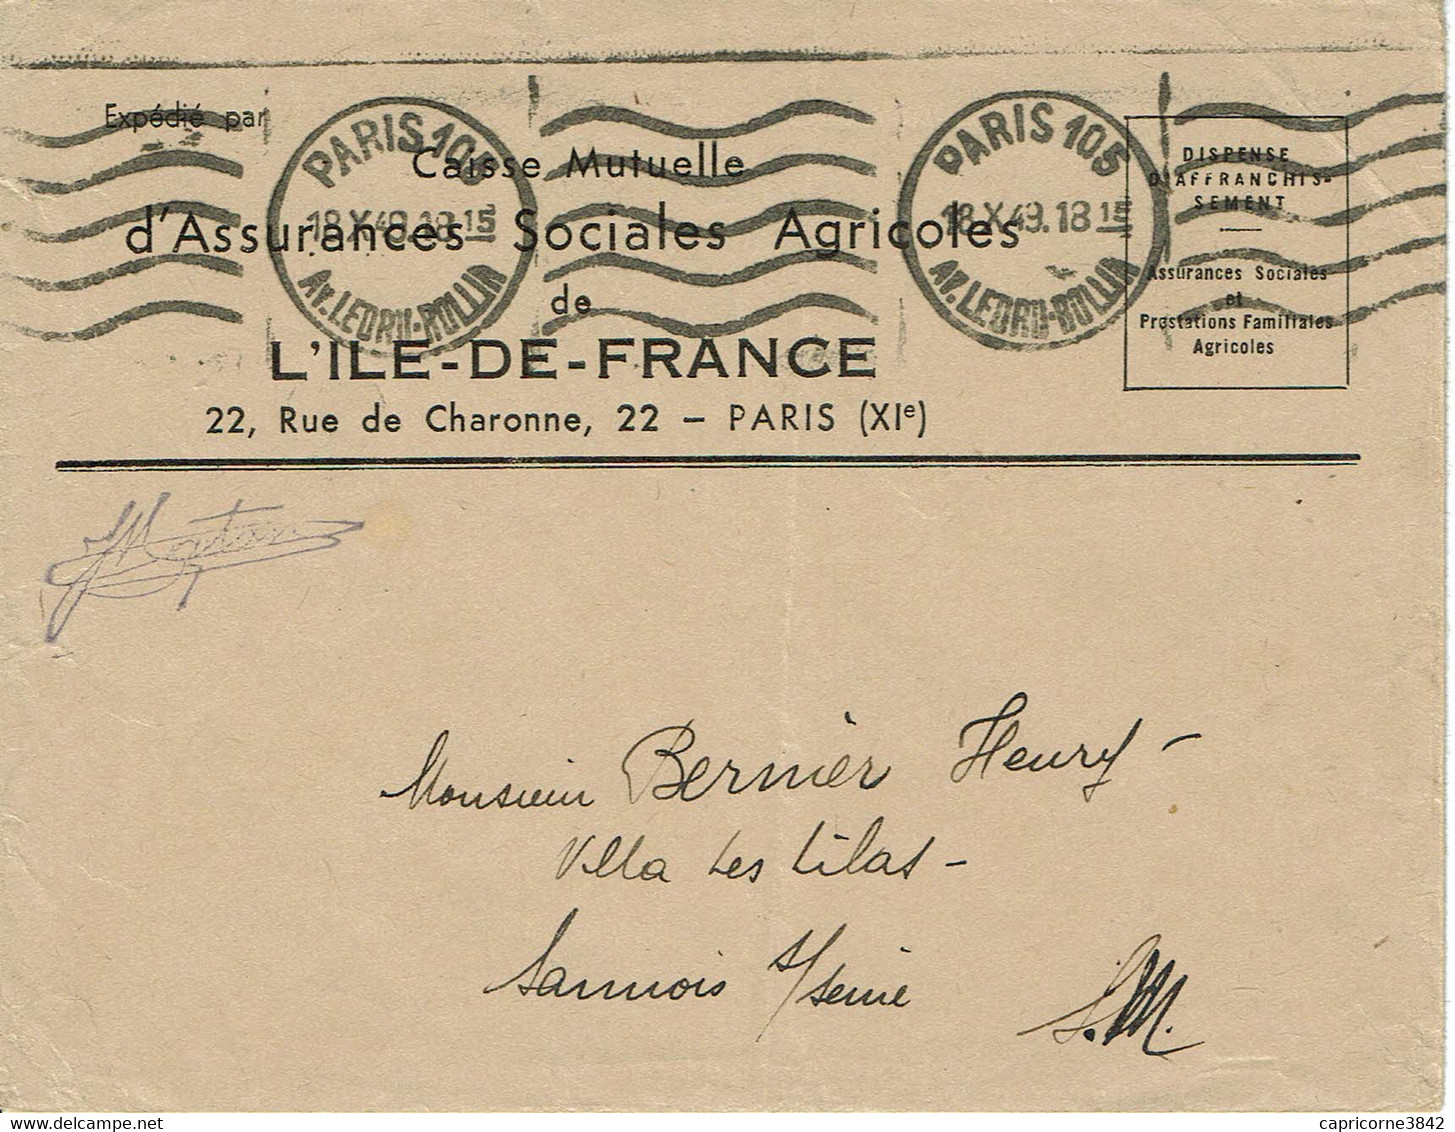 1943 - Lettre En Franchise Postale De La Caisse Mutuelle D'Assurances Sociales Agricoles - Oblit. Machine KRAG - Lettere In Franchigia Civile